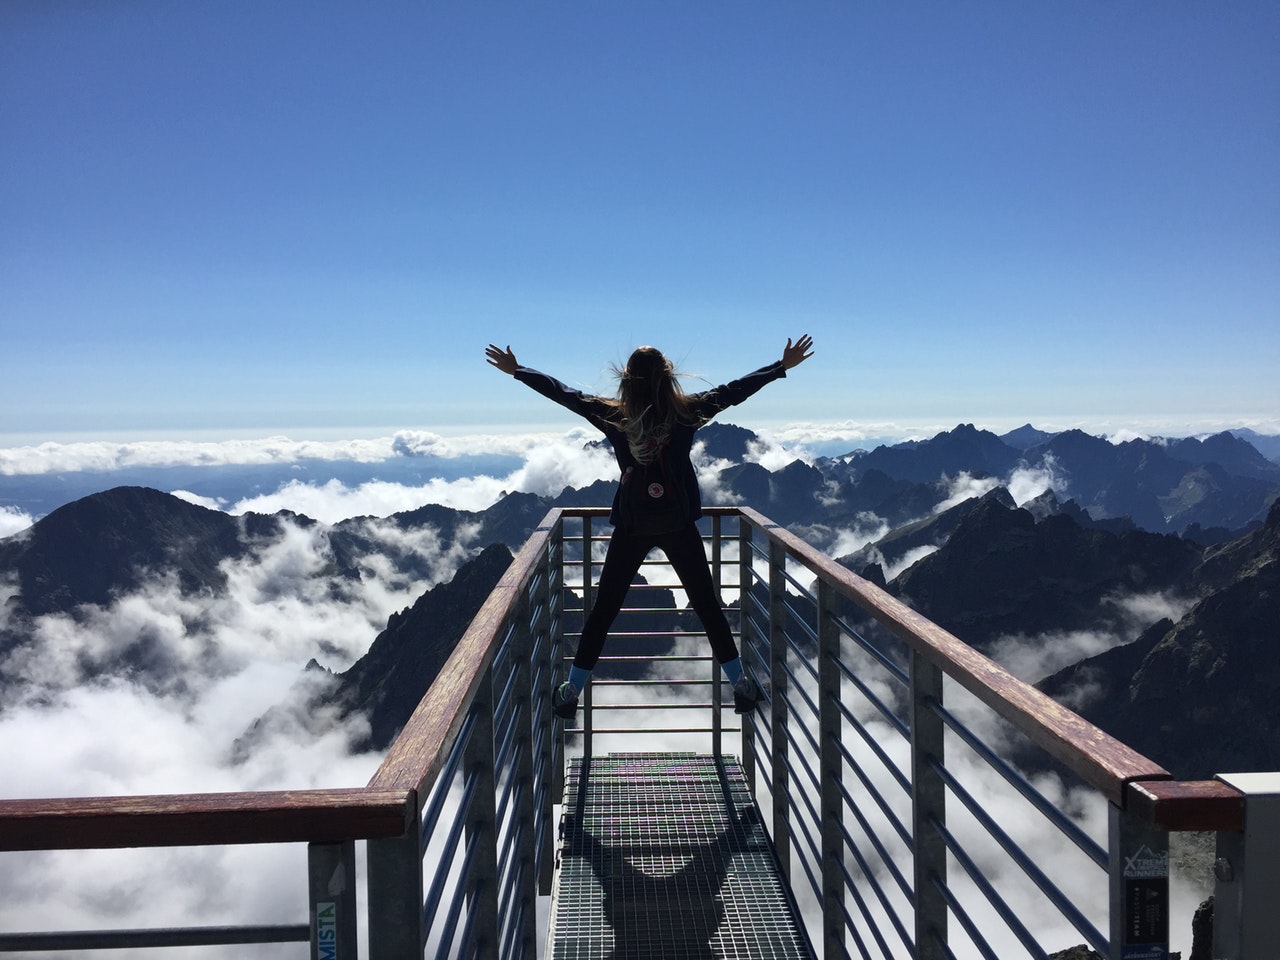 γυναίκα που σηκώνει τα χέρια της ψηλά σε μία σιδερένια γέφυρα πάνω από βουνά